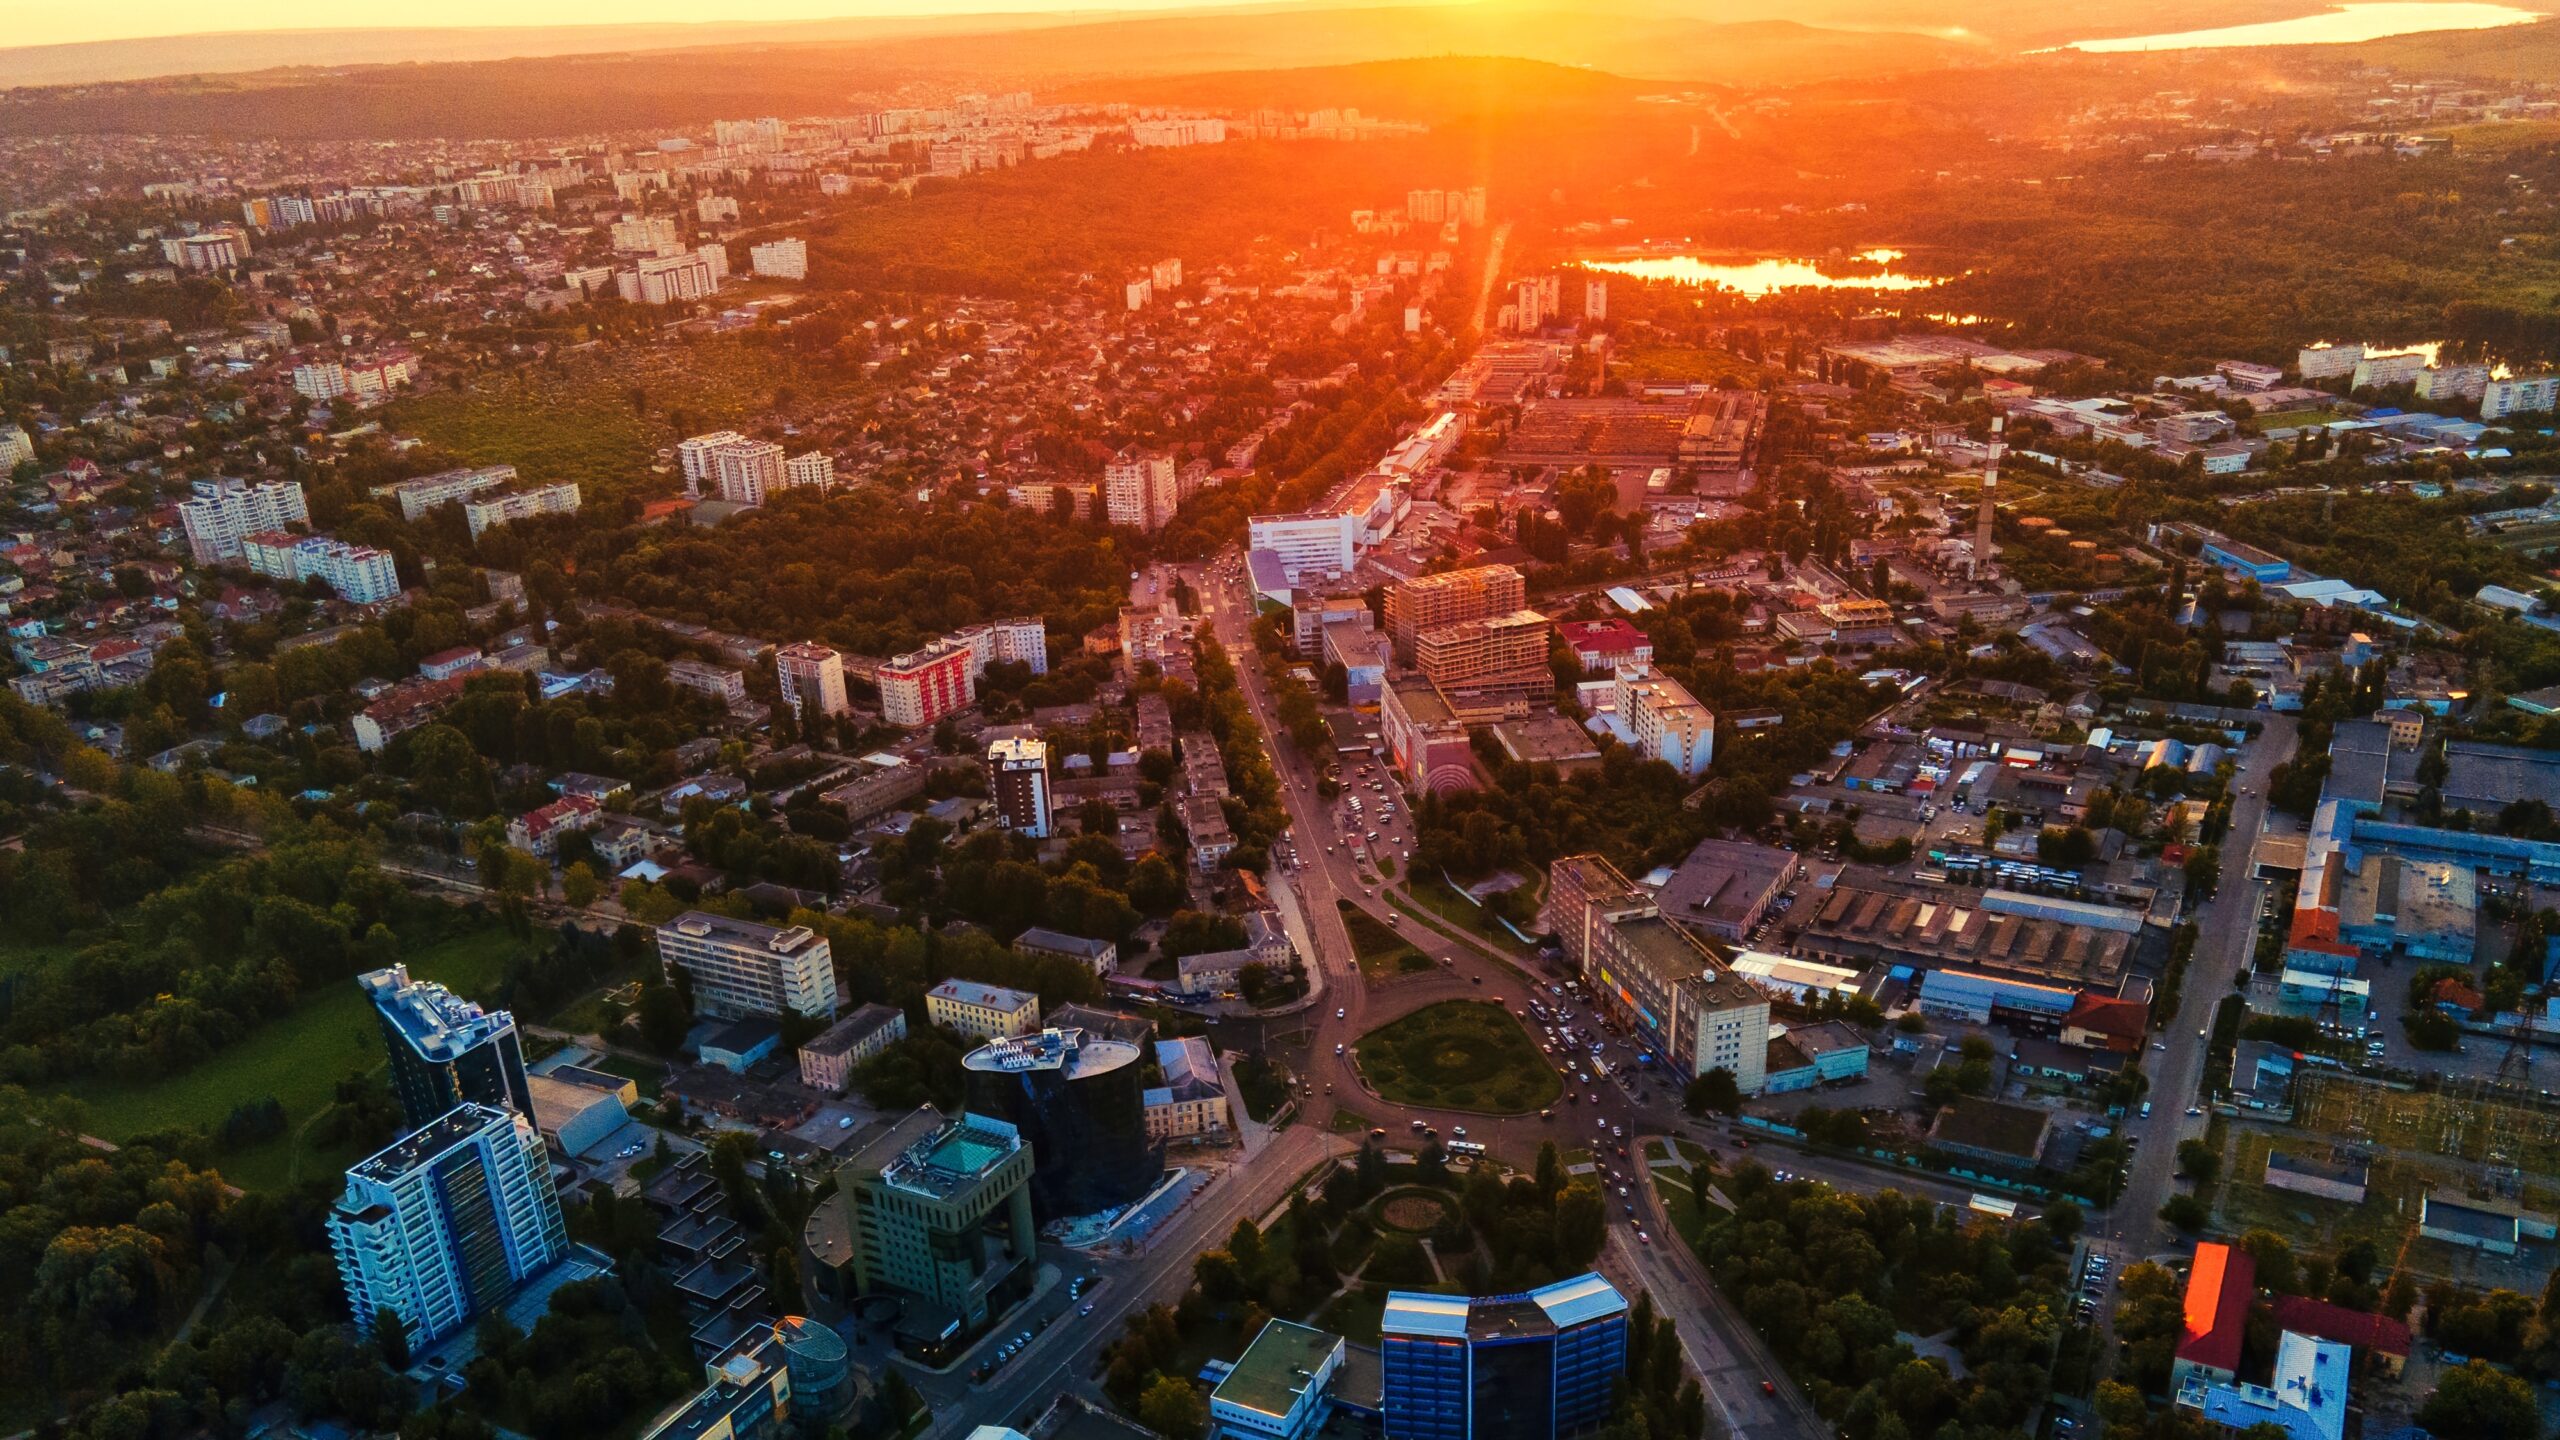 Aerial drone view of Chisinau, Moldova